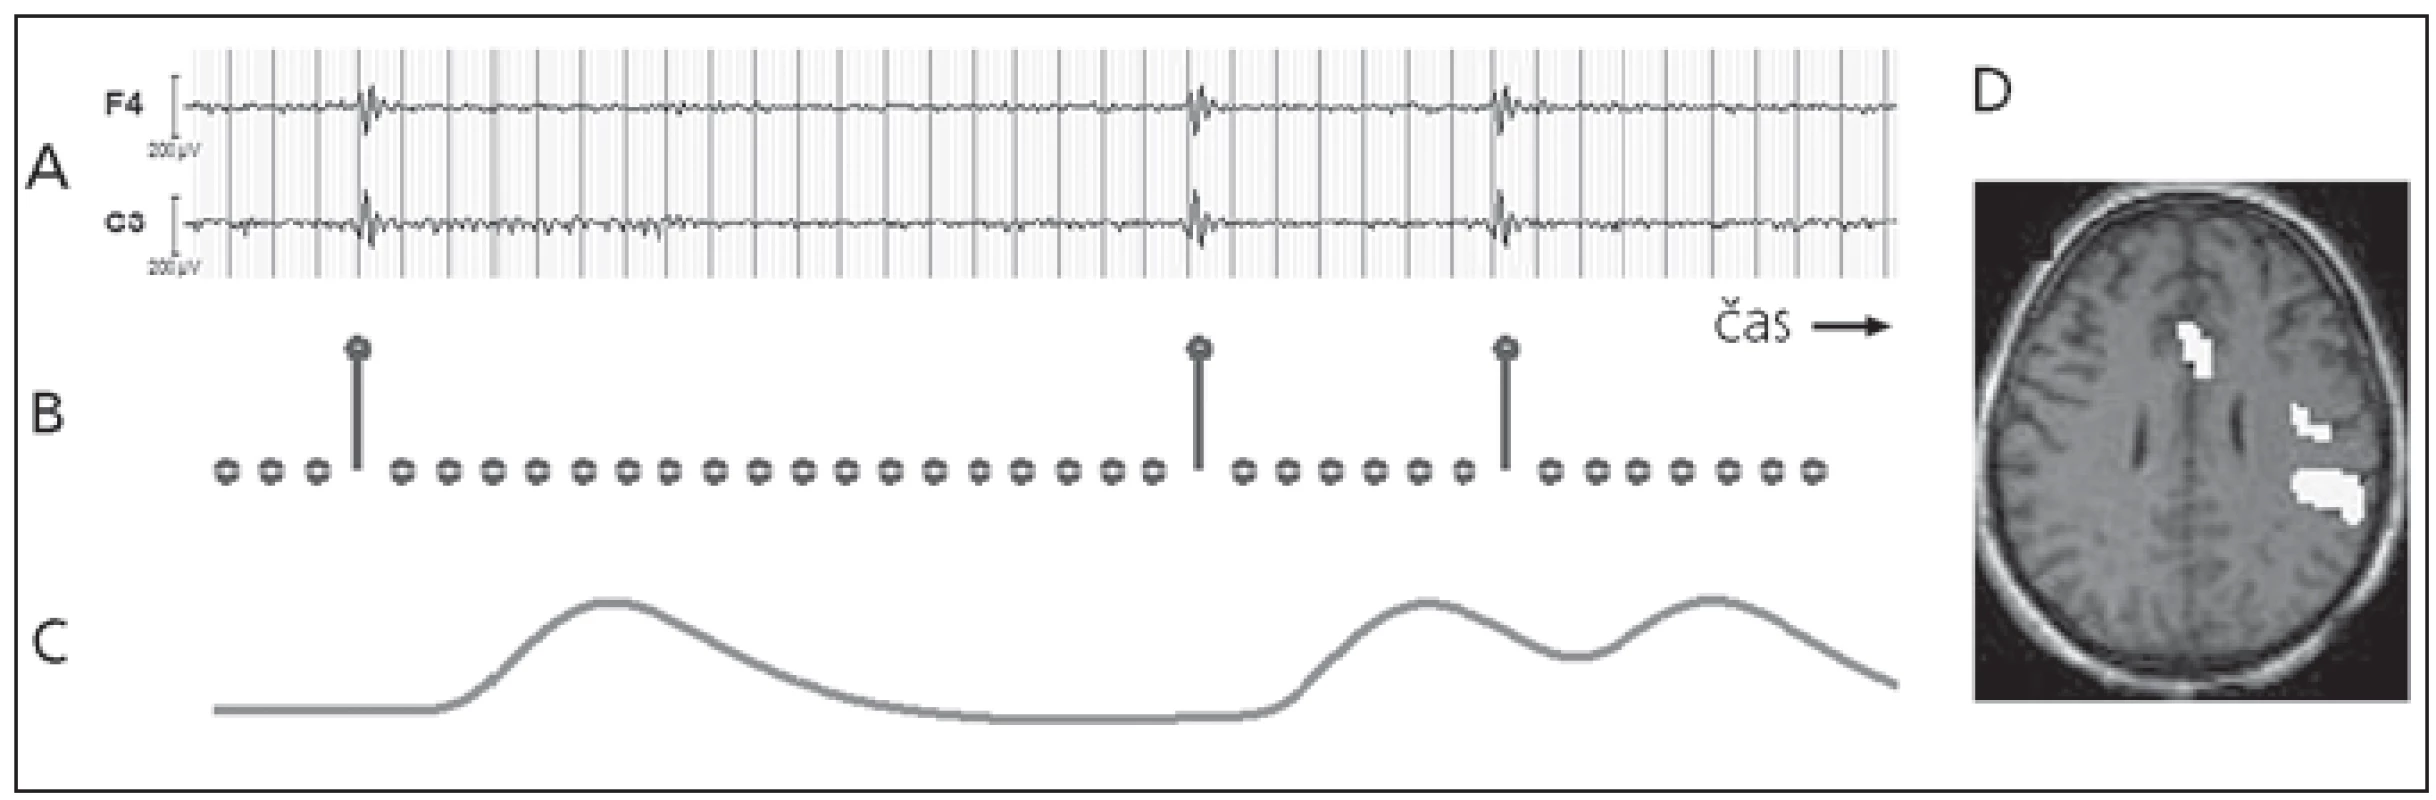 Zpracování fMR dat pomocí výbojů nalezených v interiktálním EEG záznamu.
a) interiktální EEG s výboji, b) stimulační funkce vytvořená na základě výbojů, c) GLM regresor vytvořený jako konvoluce stimulační funkce a HRF, d) výsledná statistická mapa znázorňující místa hemodynamických změn souvisejících s výboji (signifikantní efekt regresoru ve fMR datech).